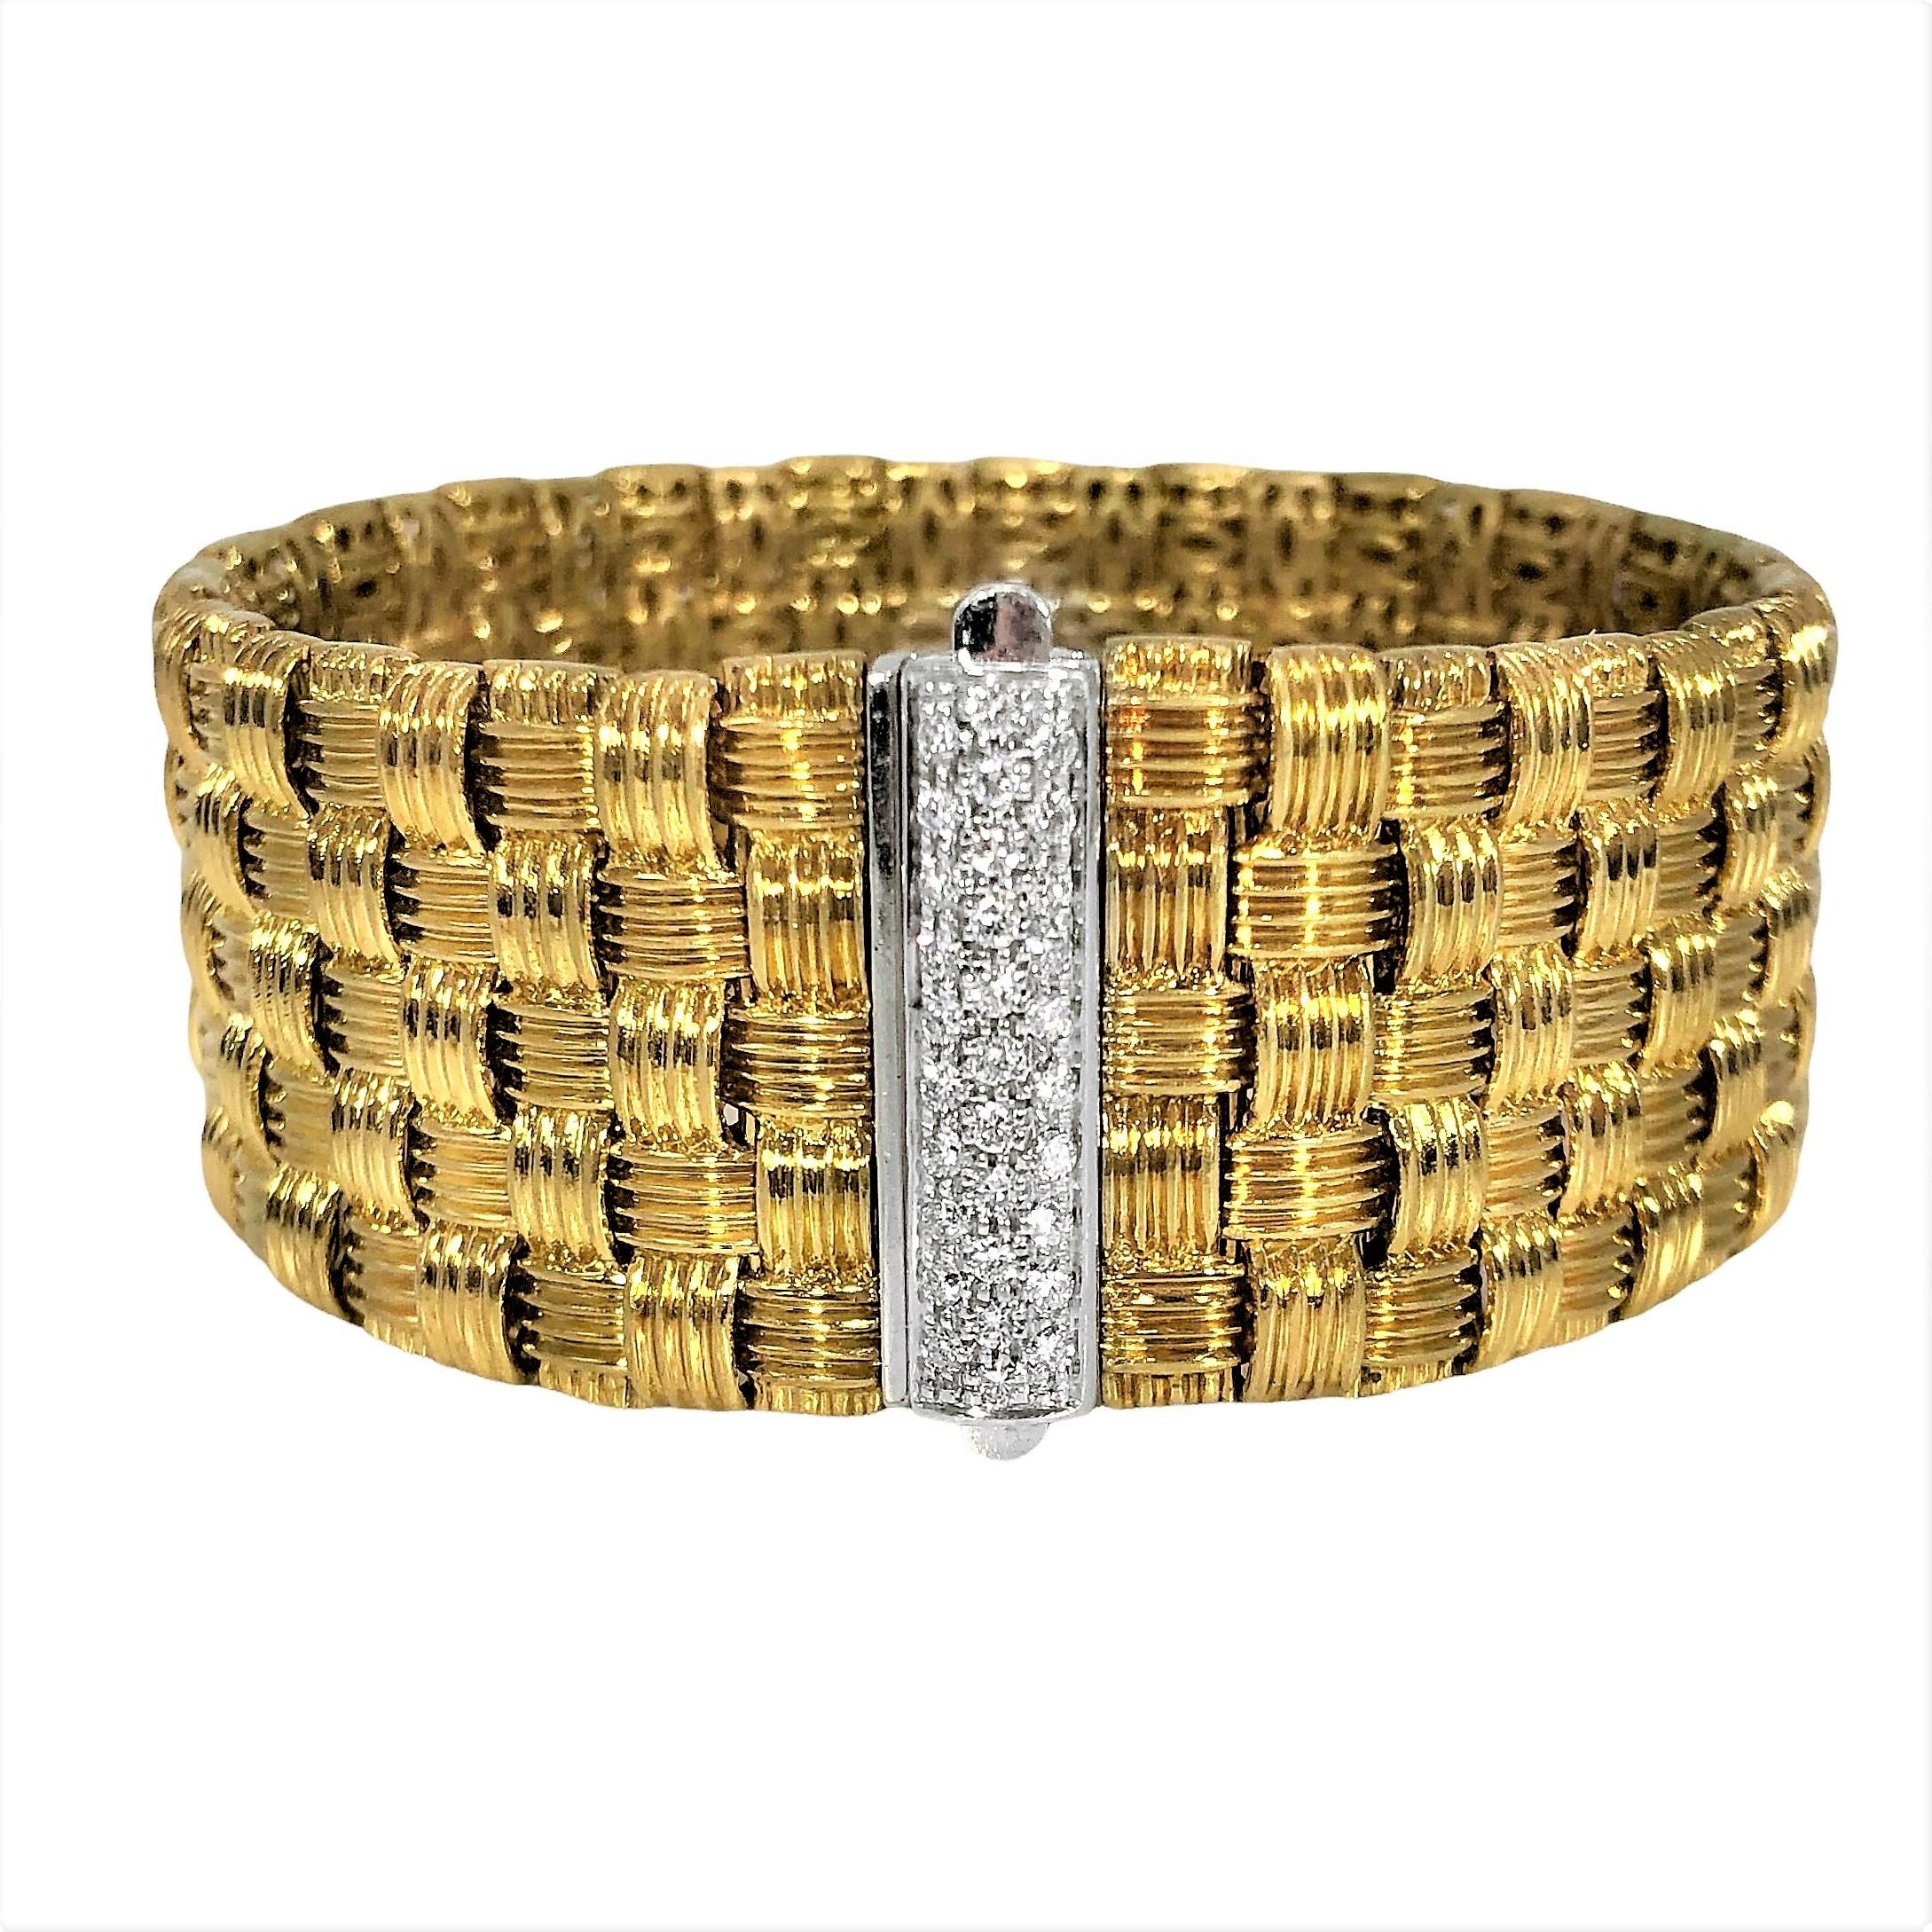 Dieses ikonische Armband von Roberto Coin trägt den passenden Namen Appassionata für die Gefühle, die es hervorruft. Es ist reich strukturiert, hervorragend detailliert, 5 Reihen breit und endet mit einer Weißgoldschließe, die mit dreißig Diamanten